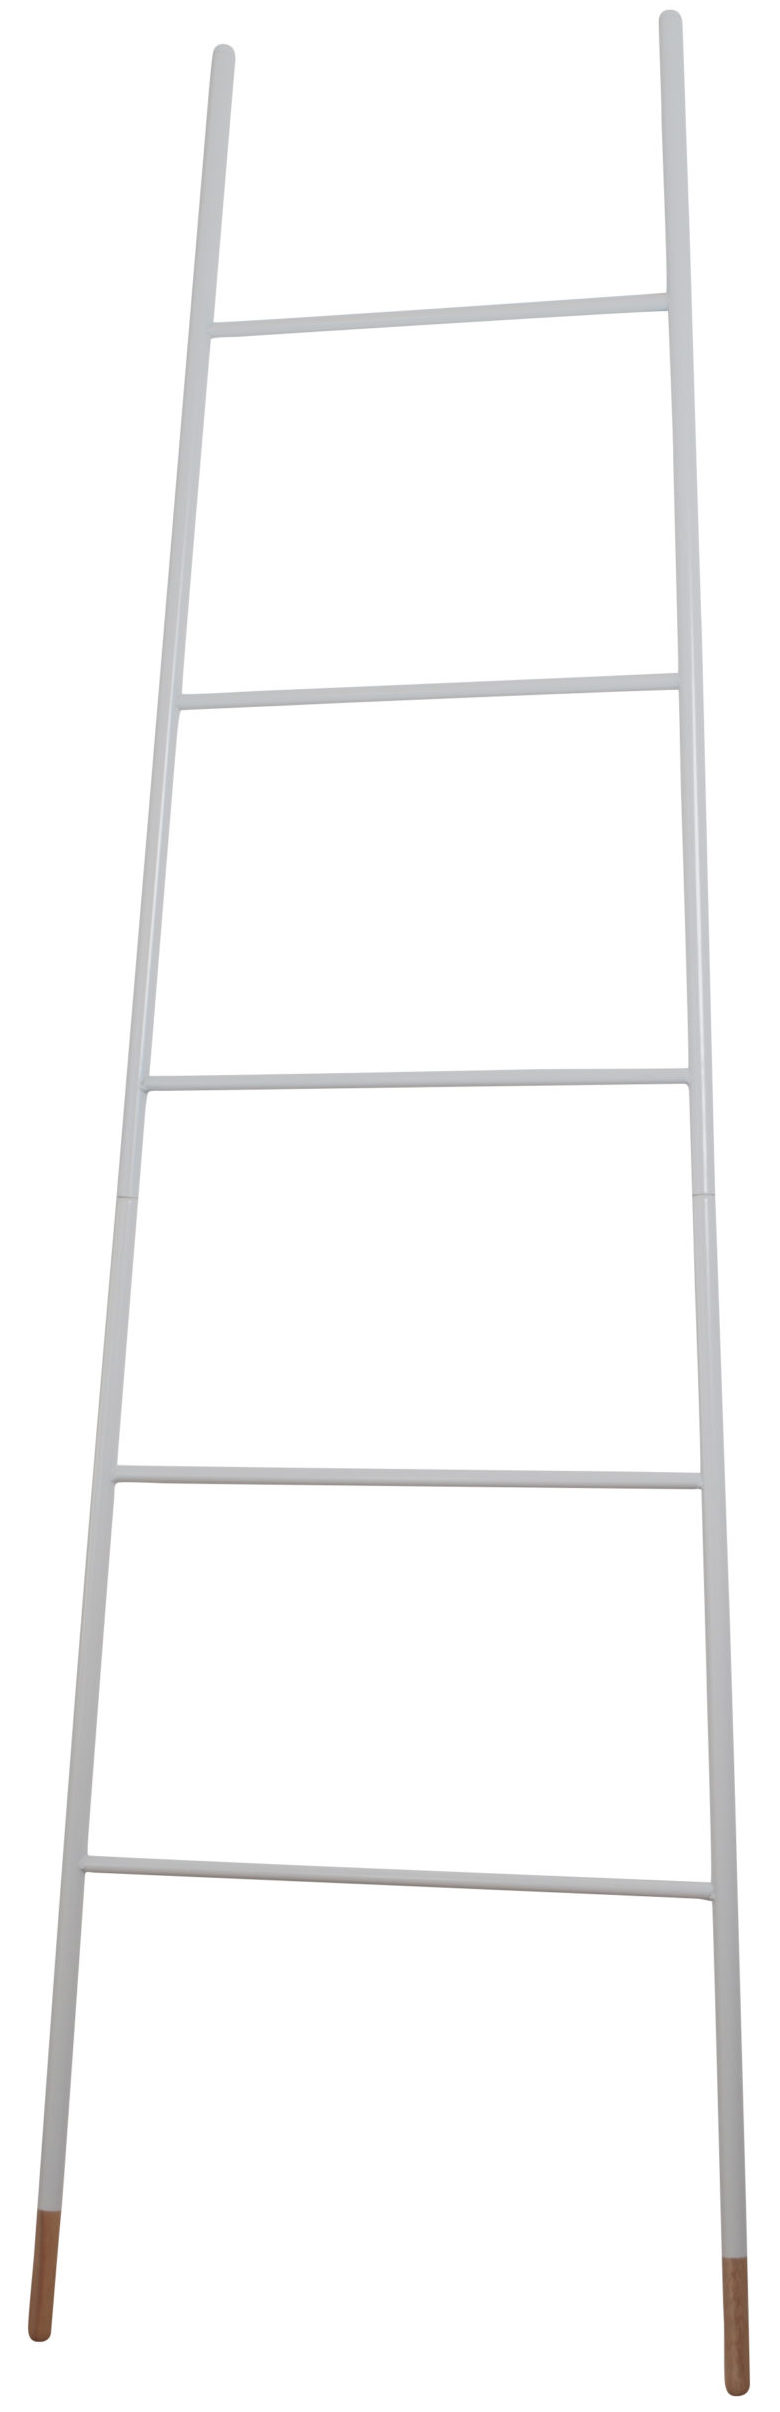 Ladder Rack wit - Zuiver